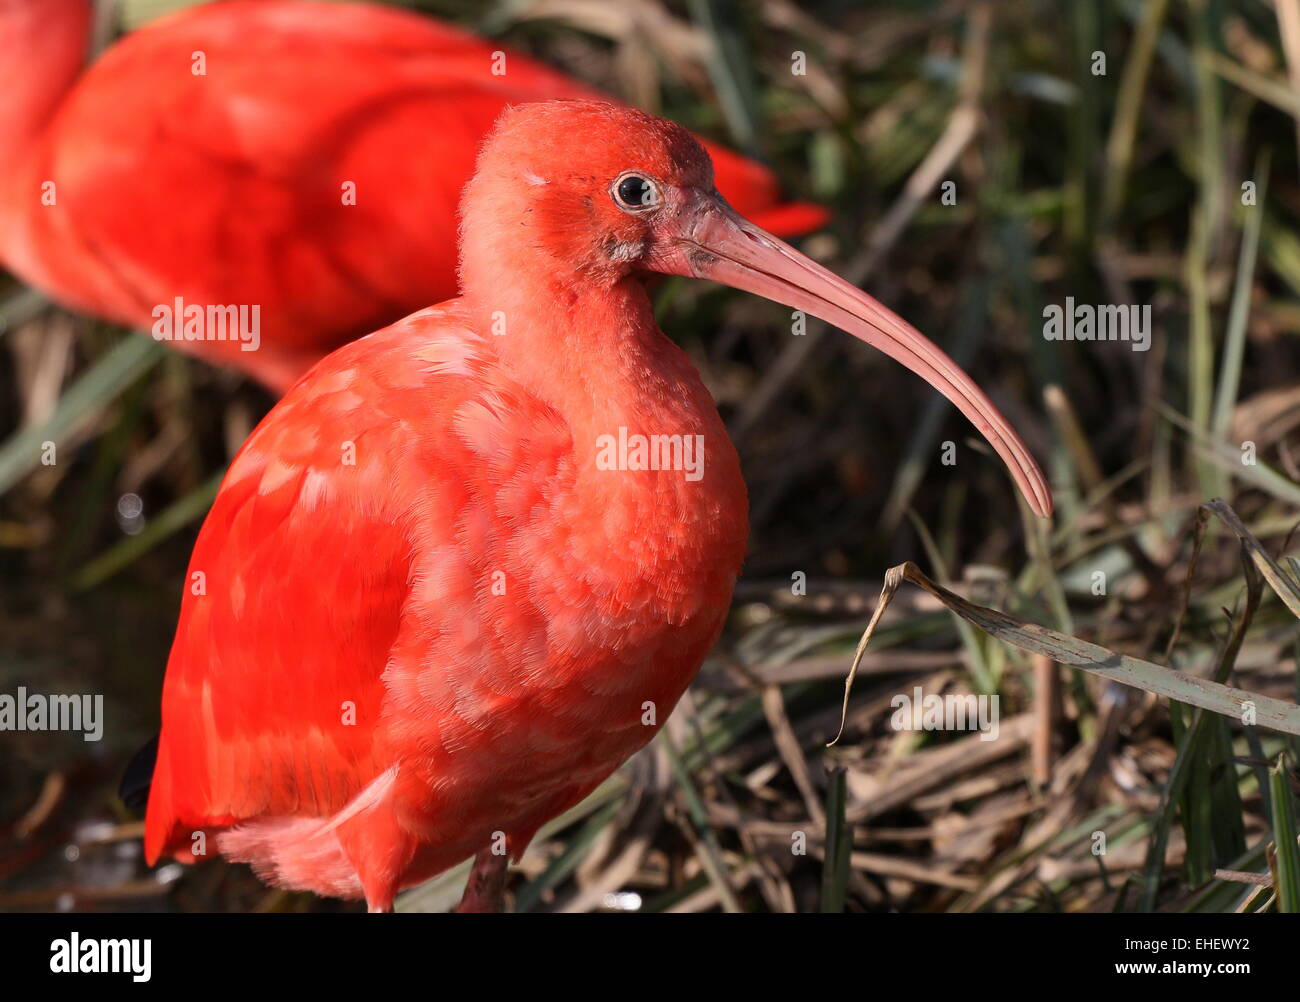 Ibis rouge (Eudocimus ruber) portrait, vu de profil Banque D'Images